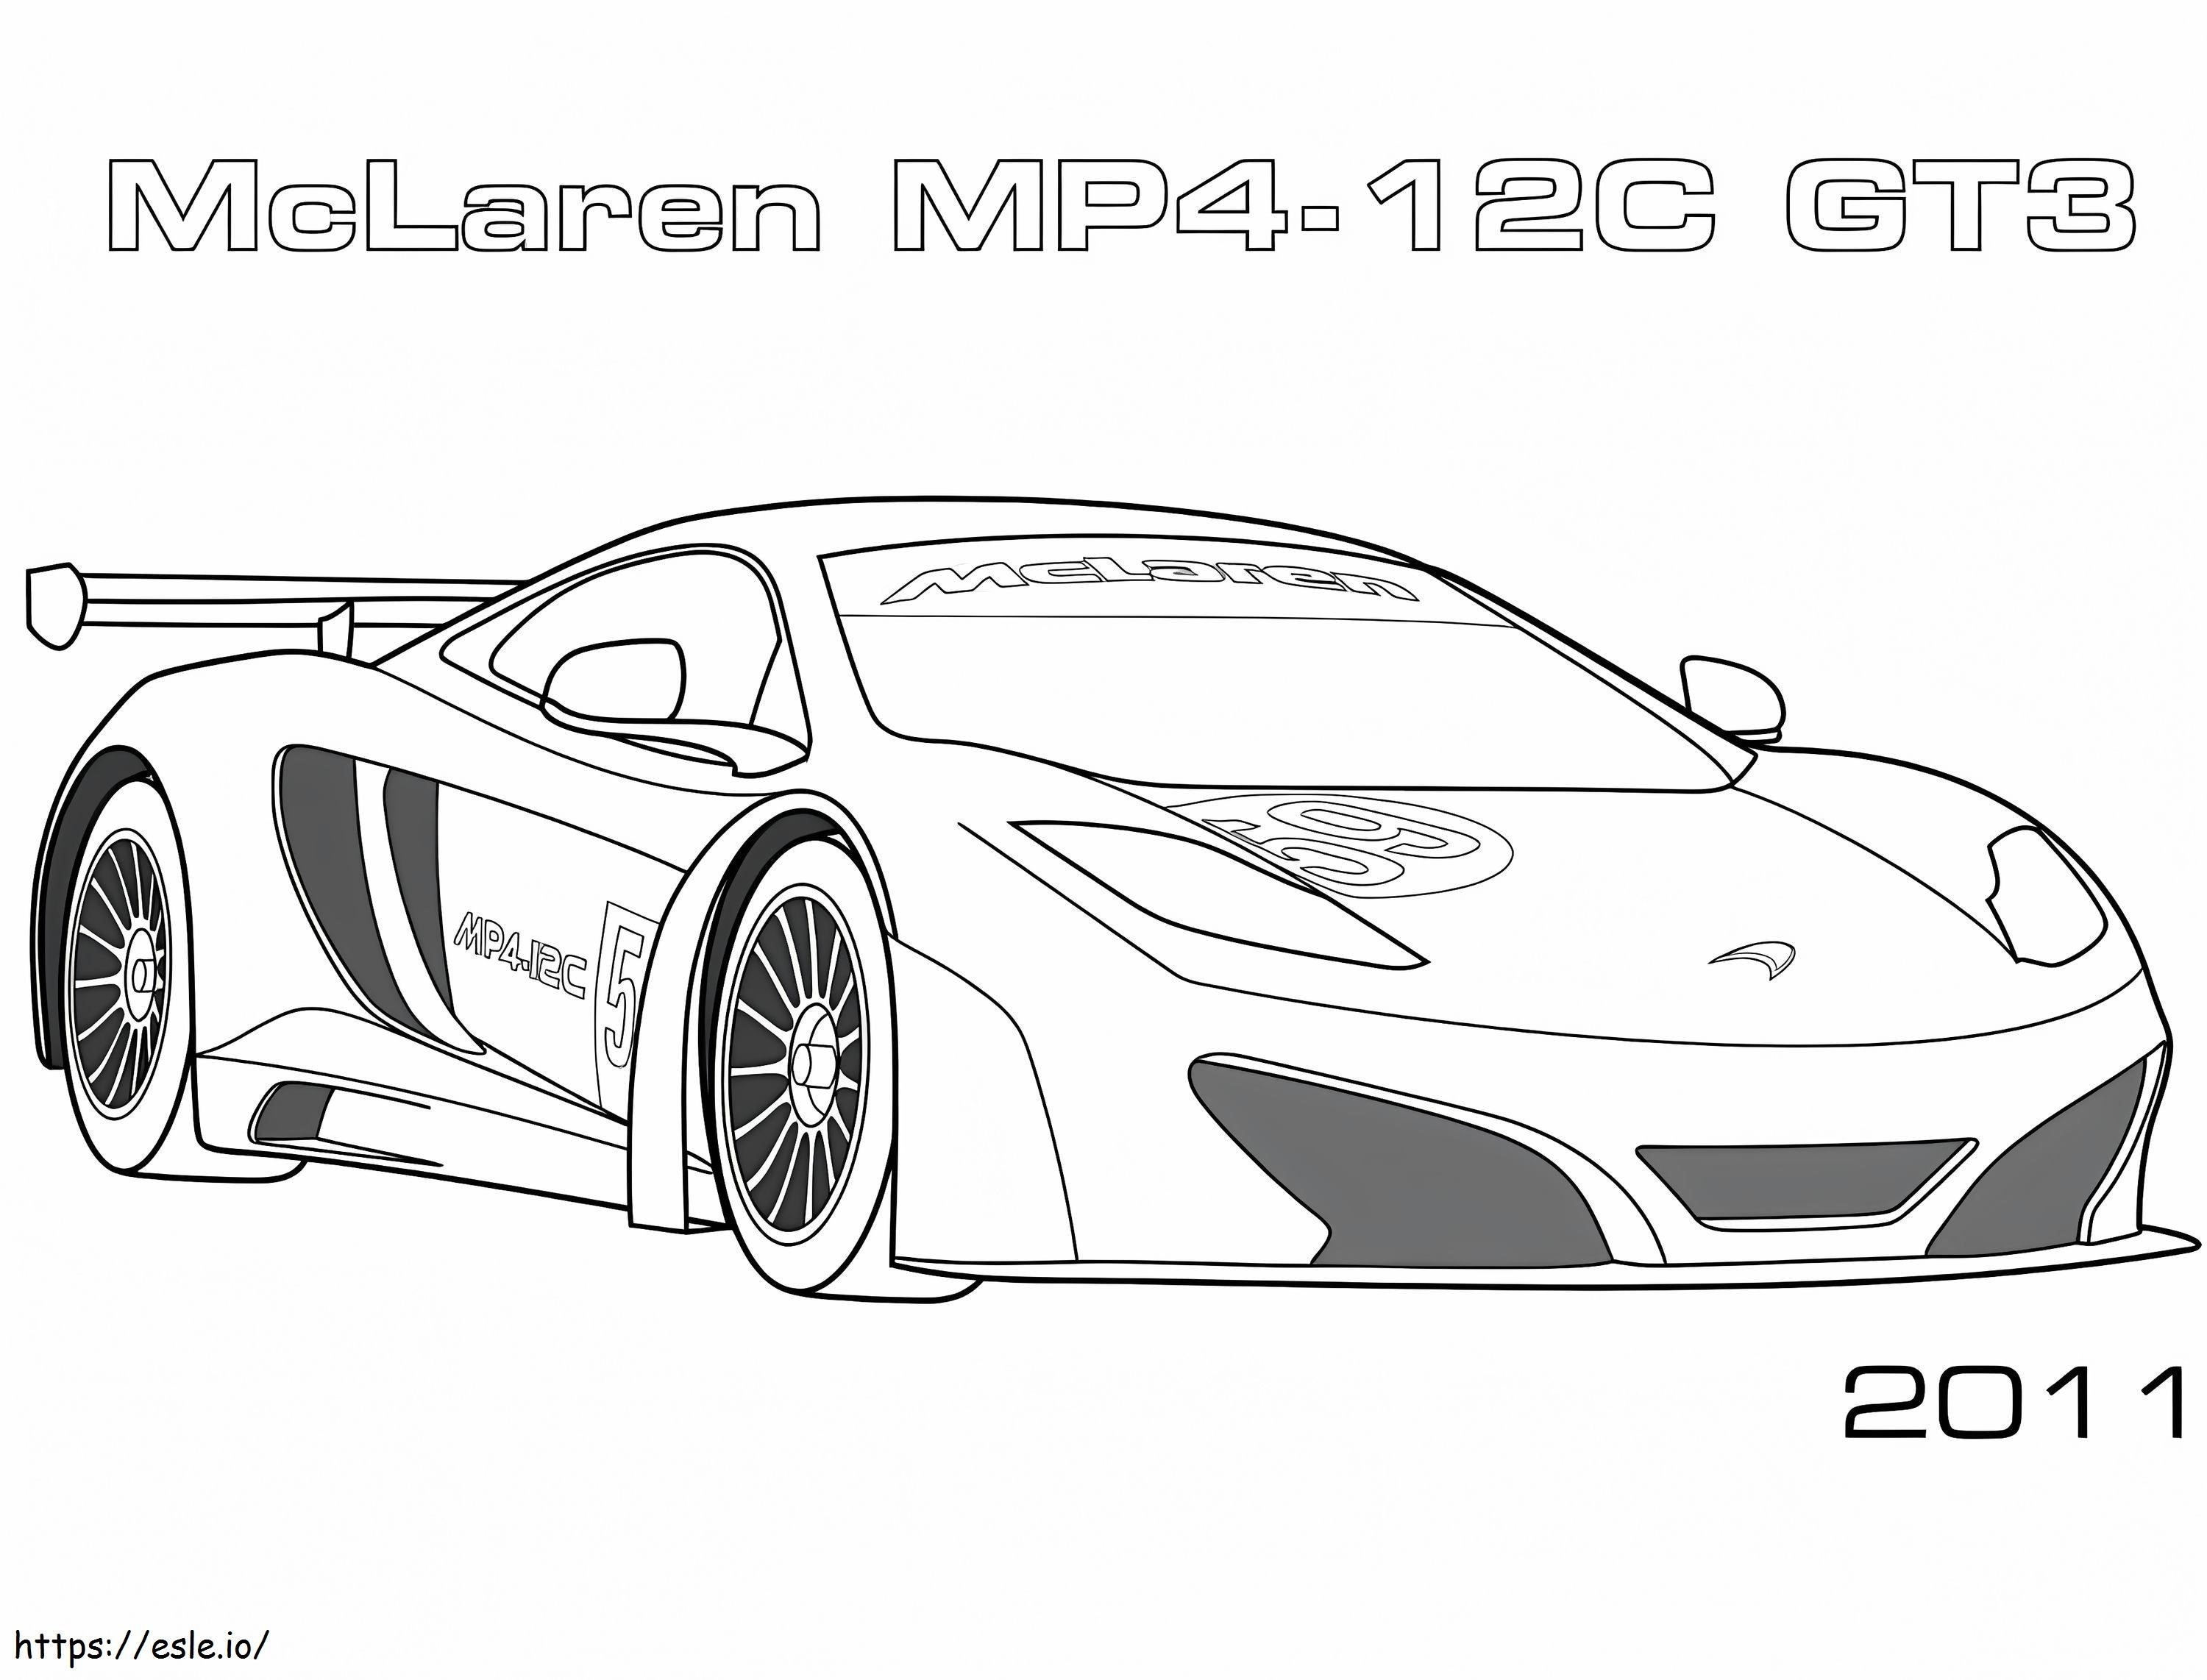  McLaren MP4 12C GT3 para colorear